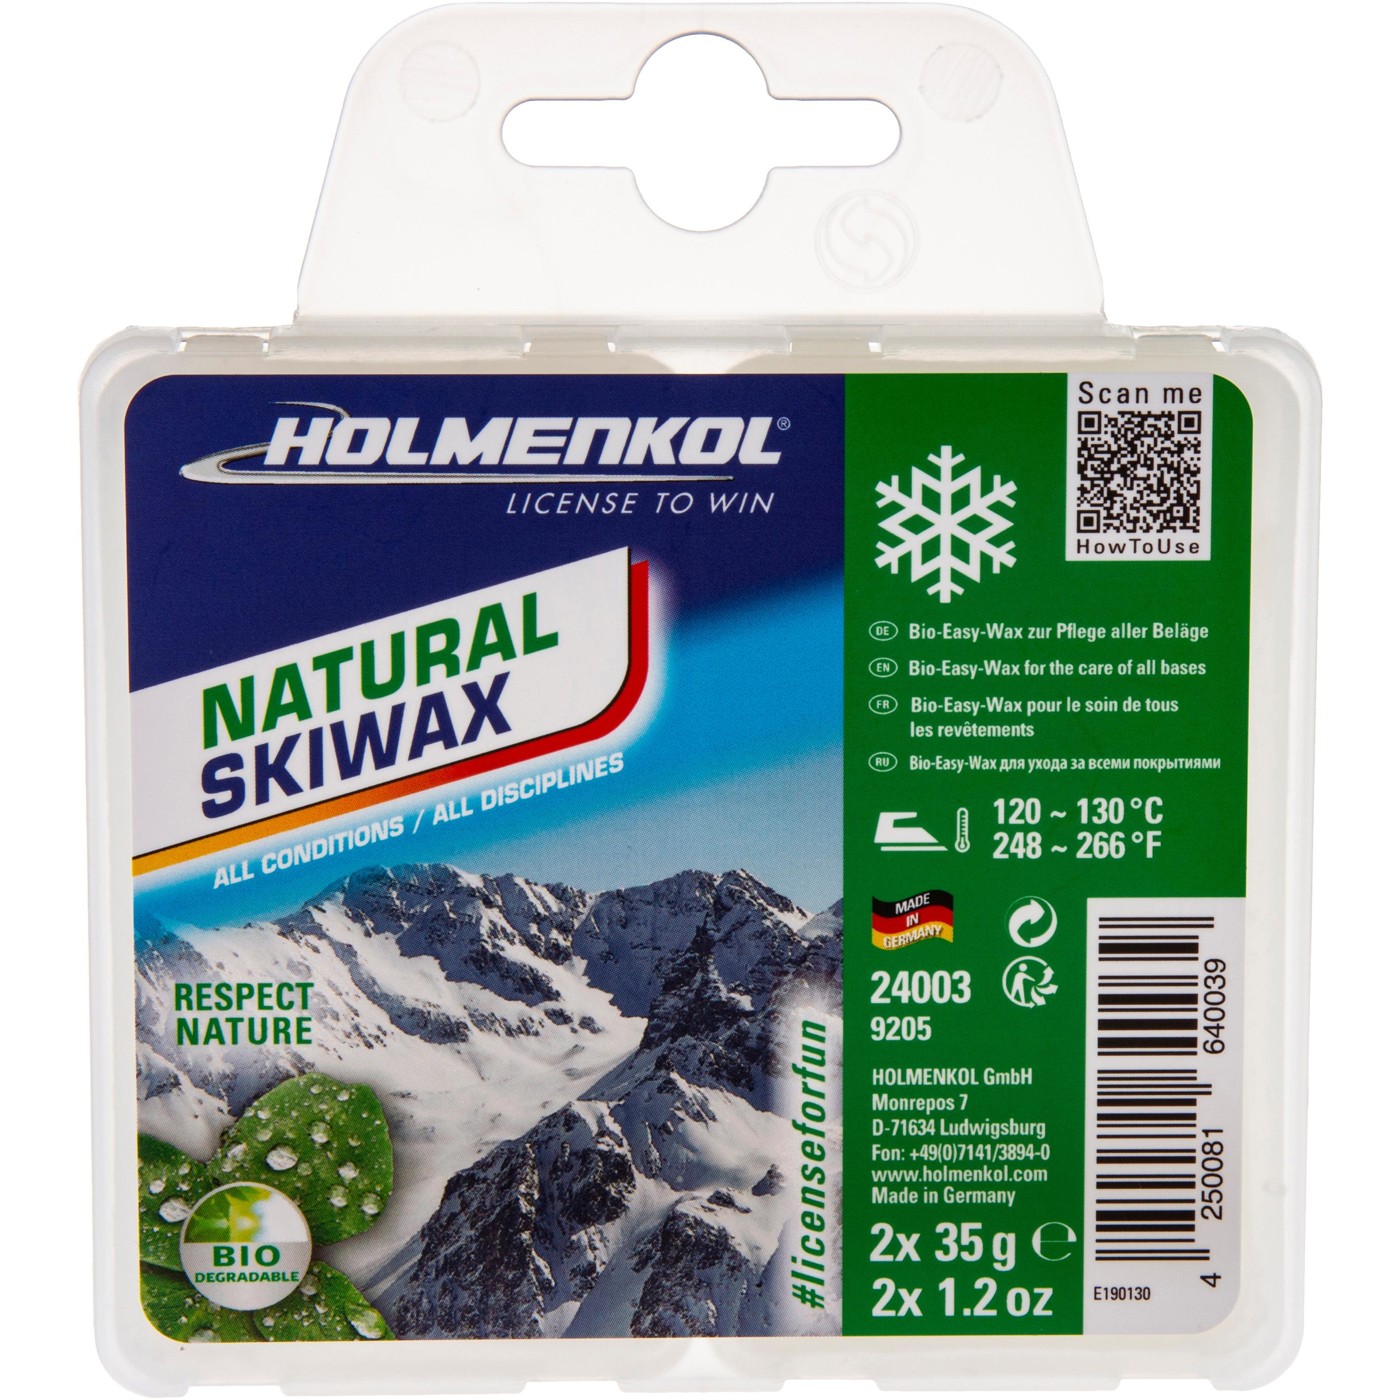 HOLMENKOL Natural Skiwax 2x35g